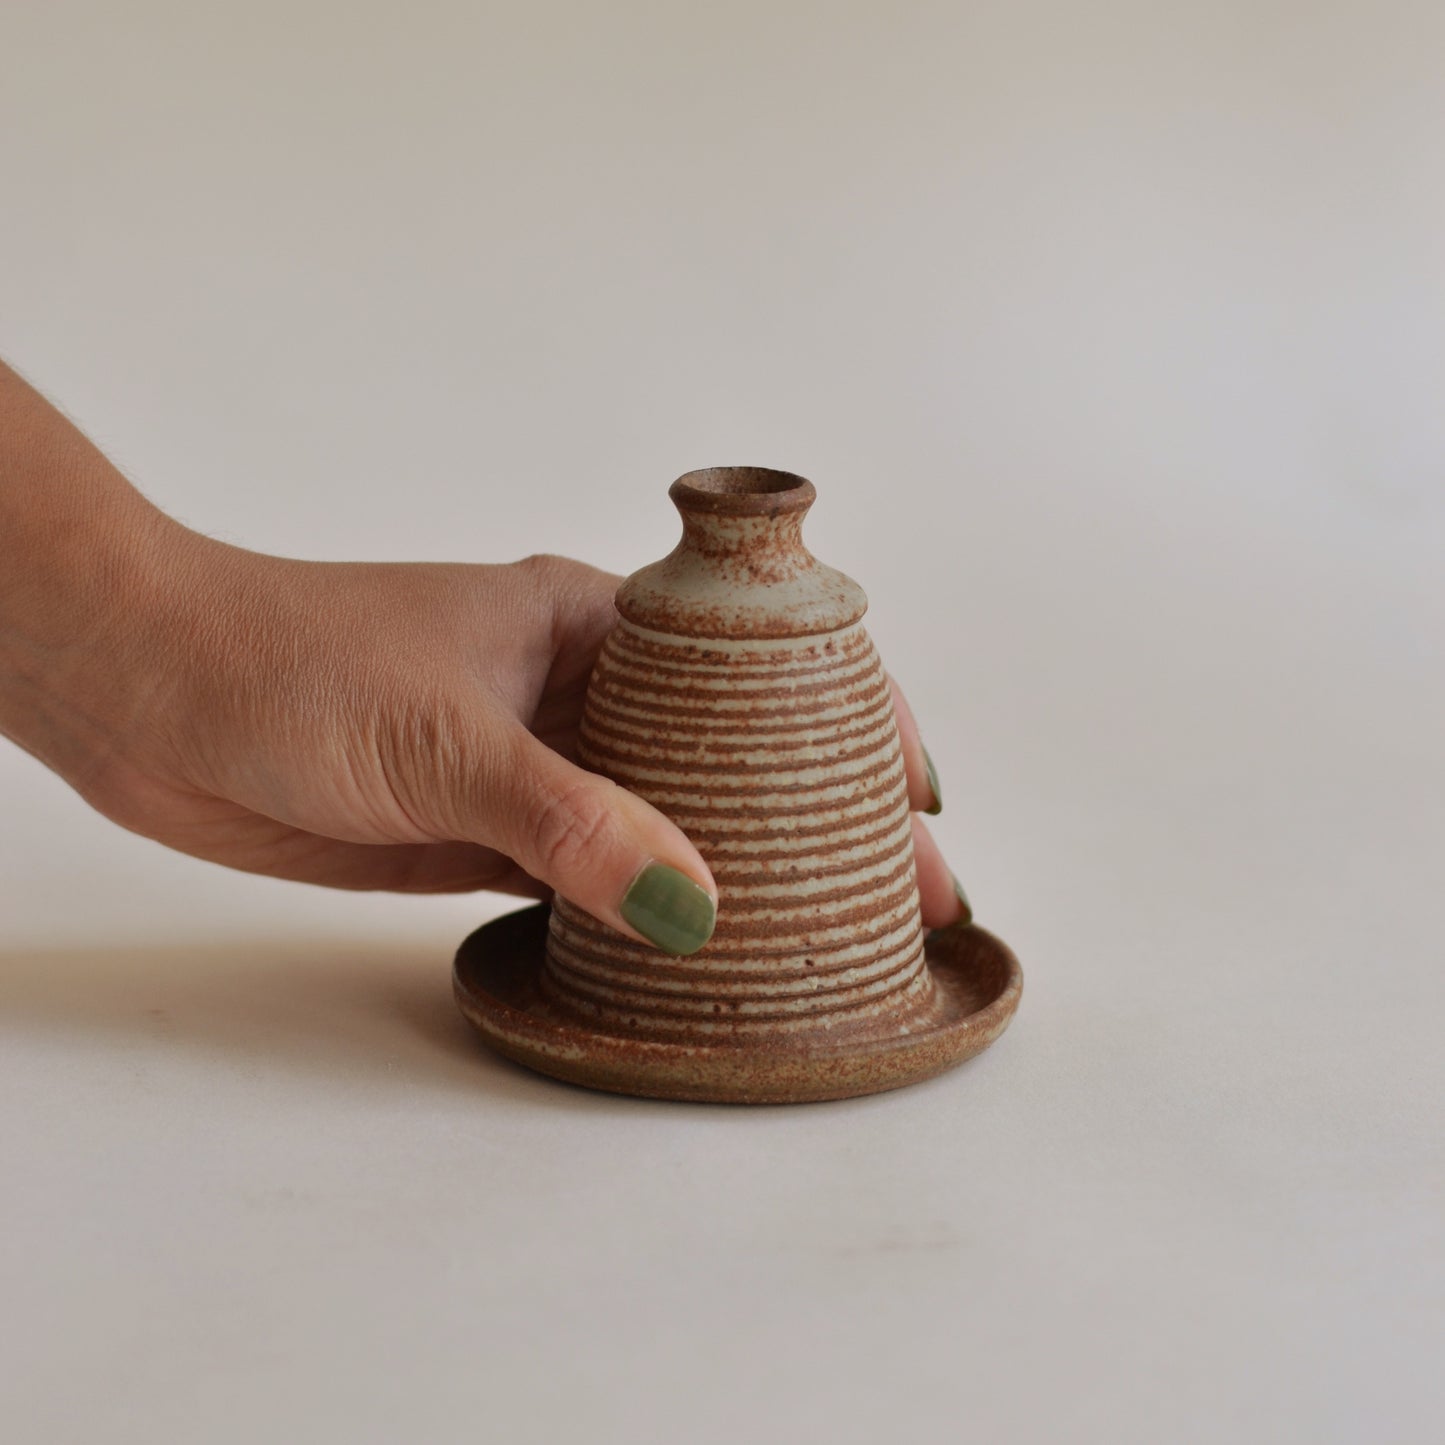 Studio Pottery Bud Vase with Tray Base